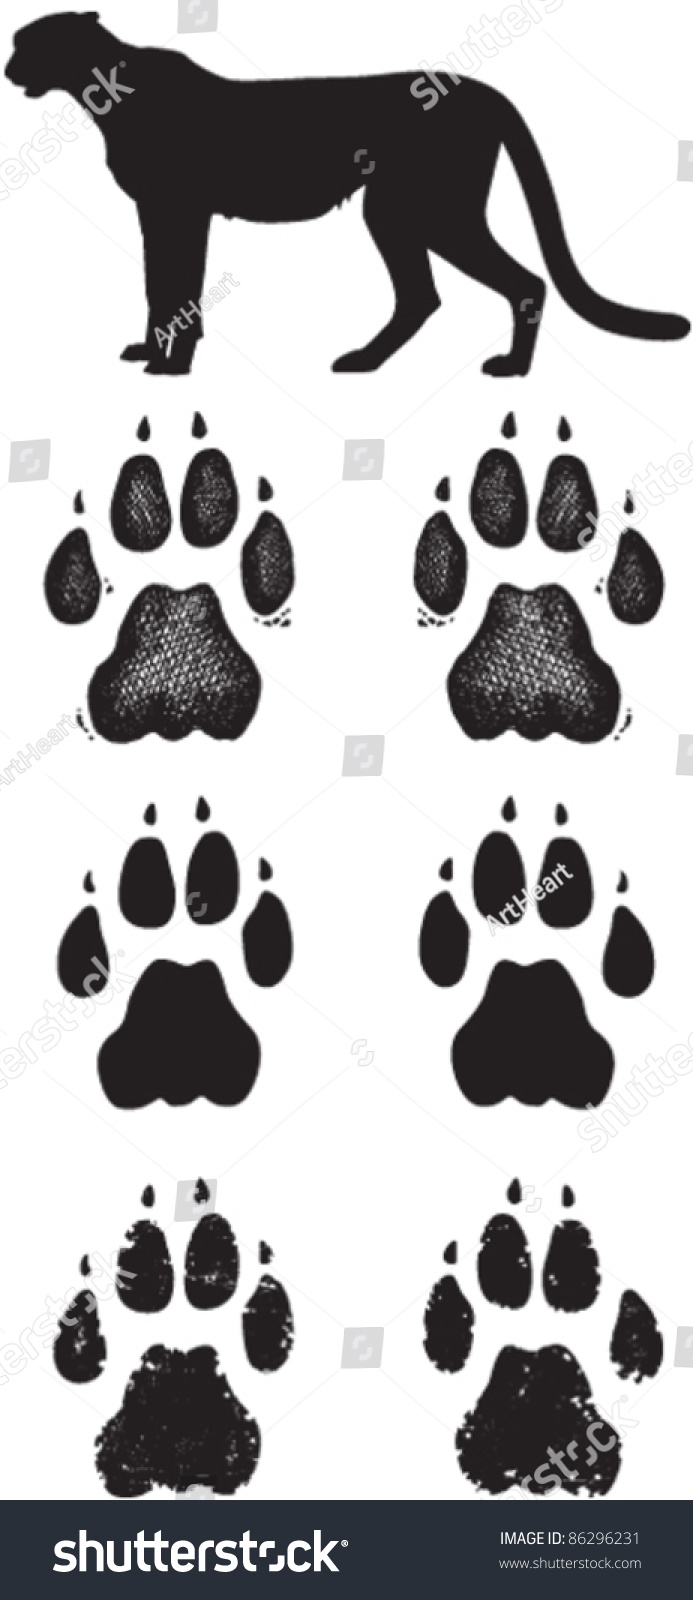 2,049 рез. по запросу "Cheetah paw prints" - изображения, стоковы...